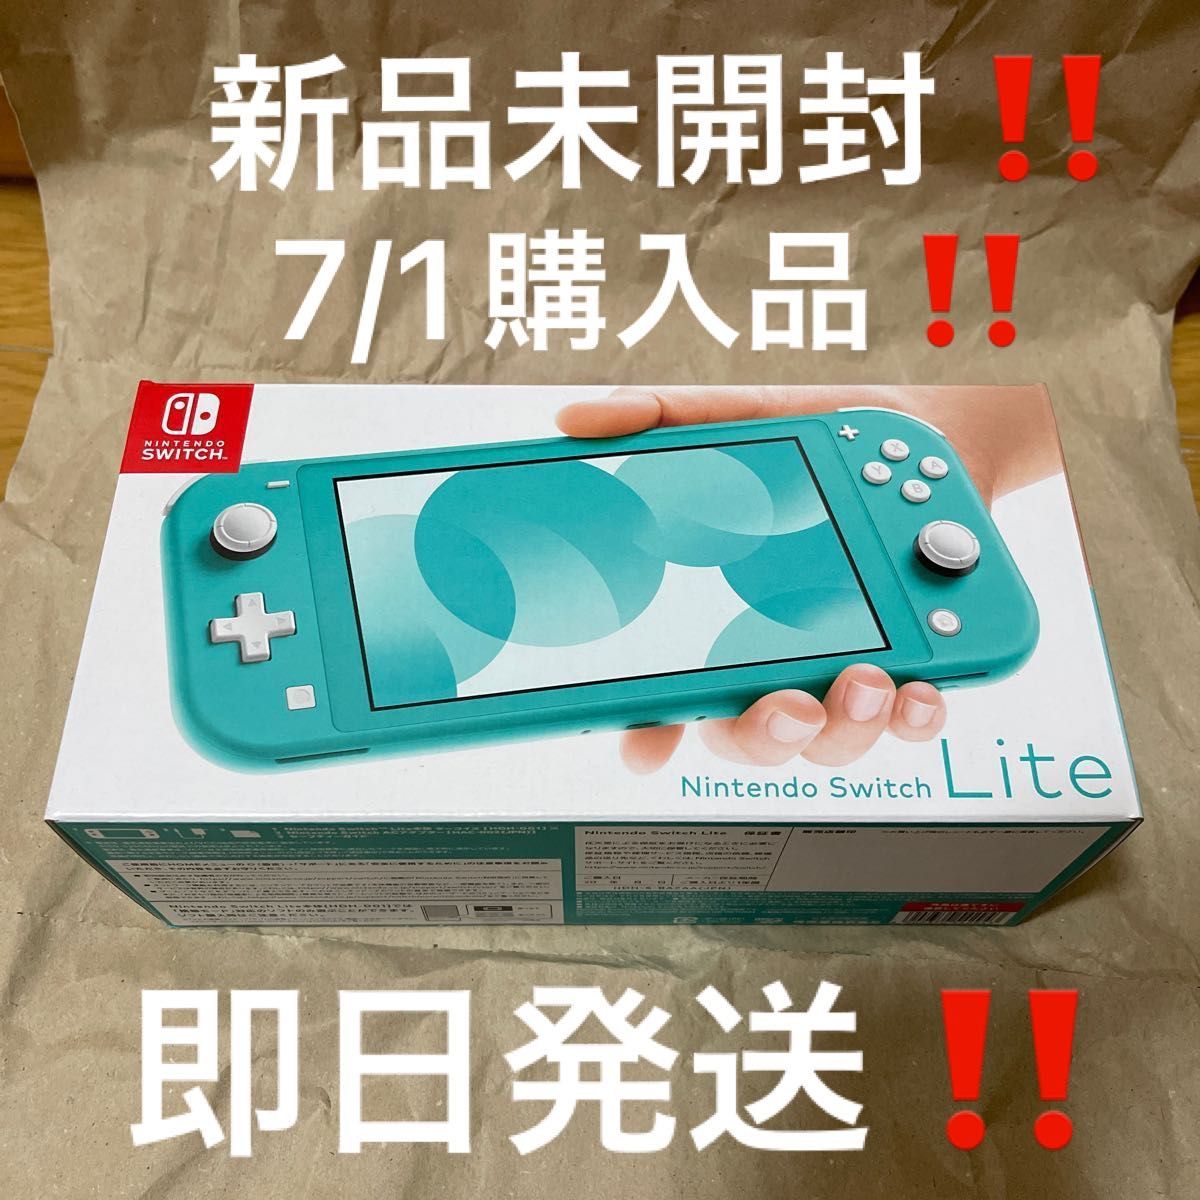 7/1購入品 新品未開封 Nintendo Switch Lite ターコイズ 店舗印無し 24